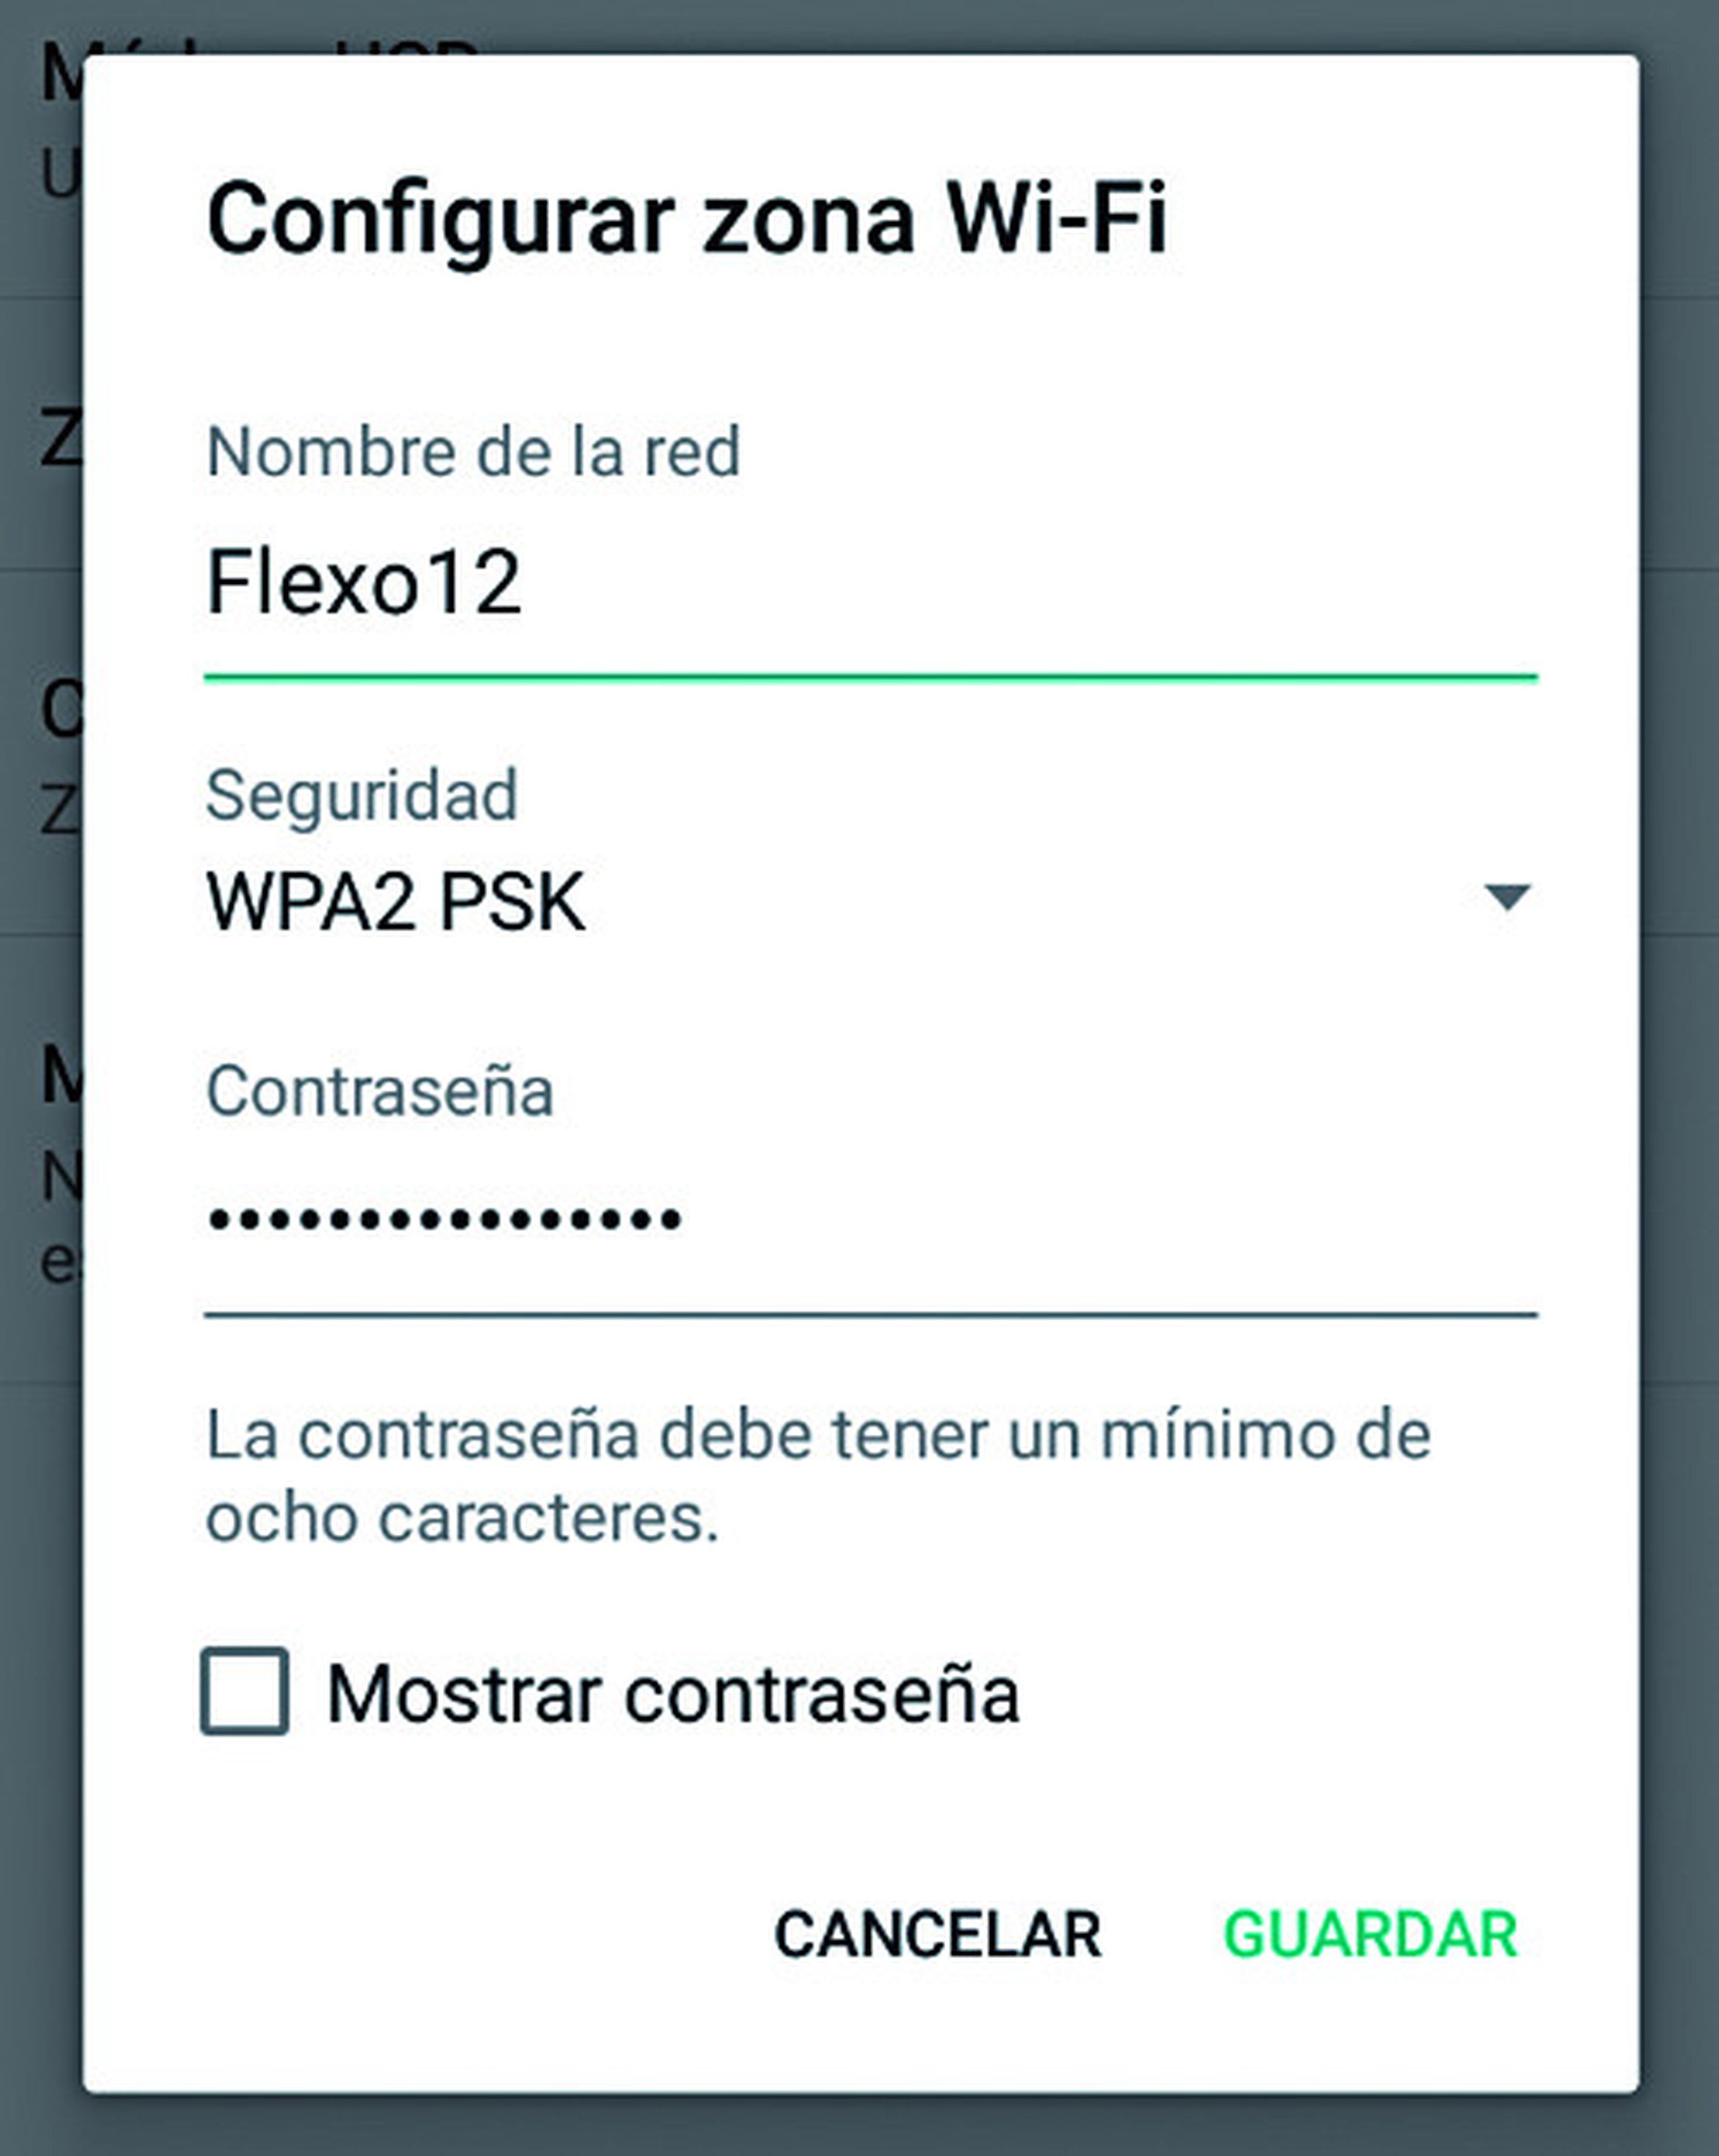 Cómo compartir el 4G de tu móvil por WiFi en Android